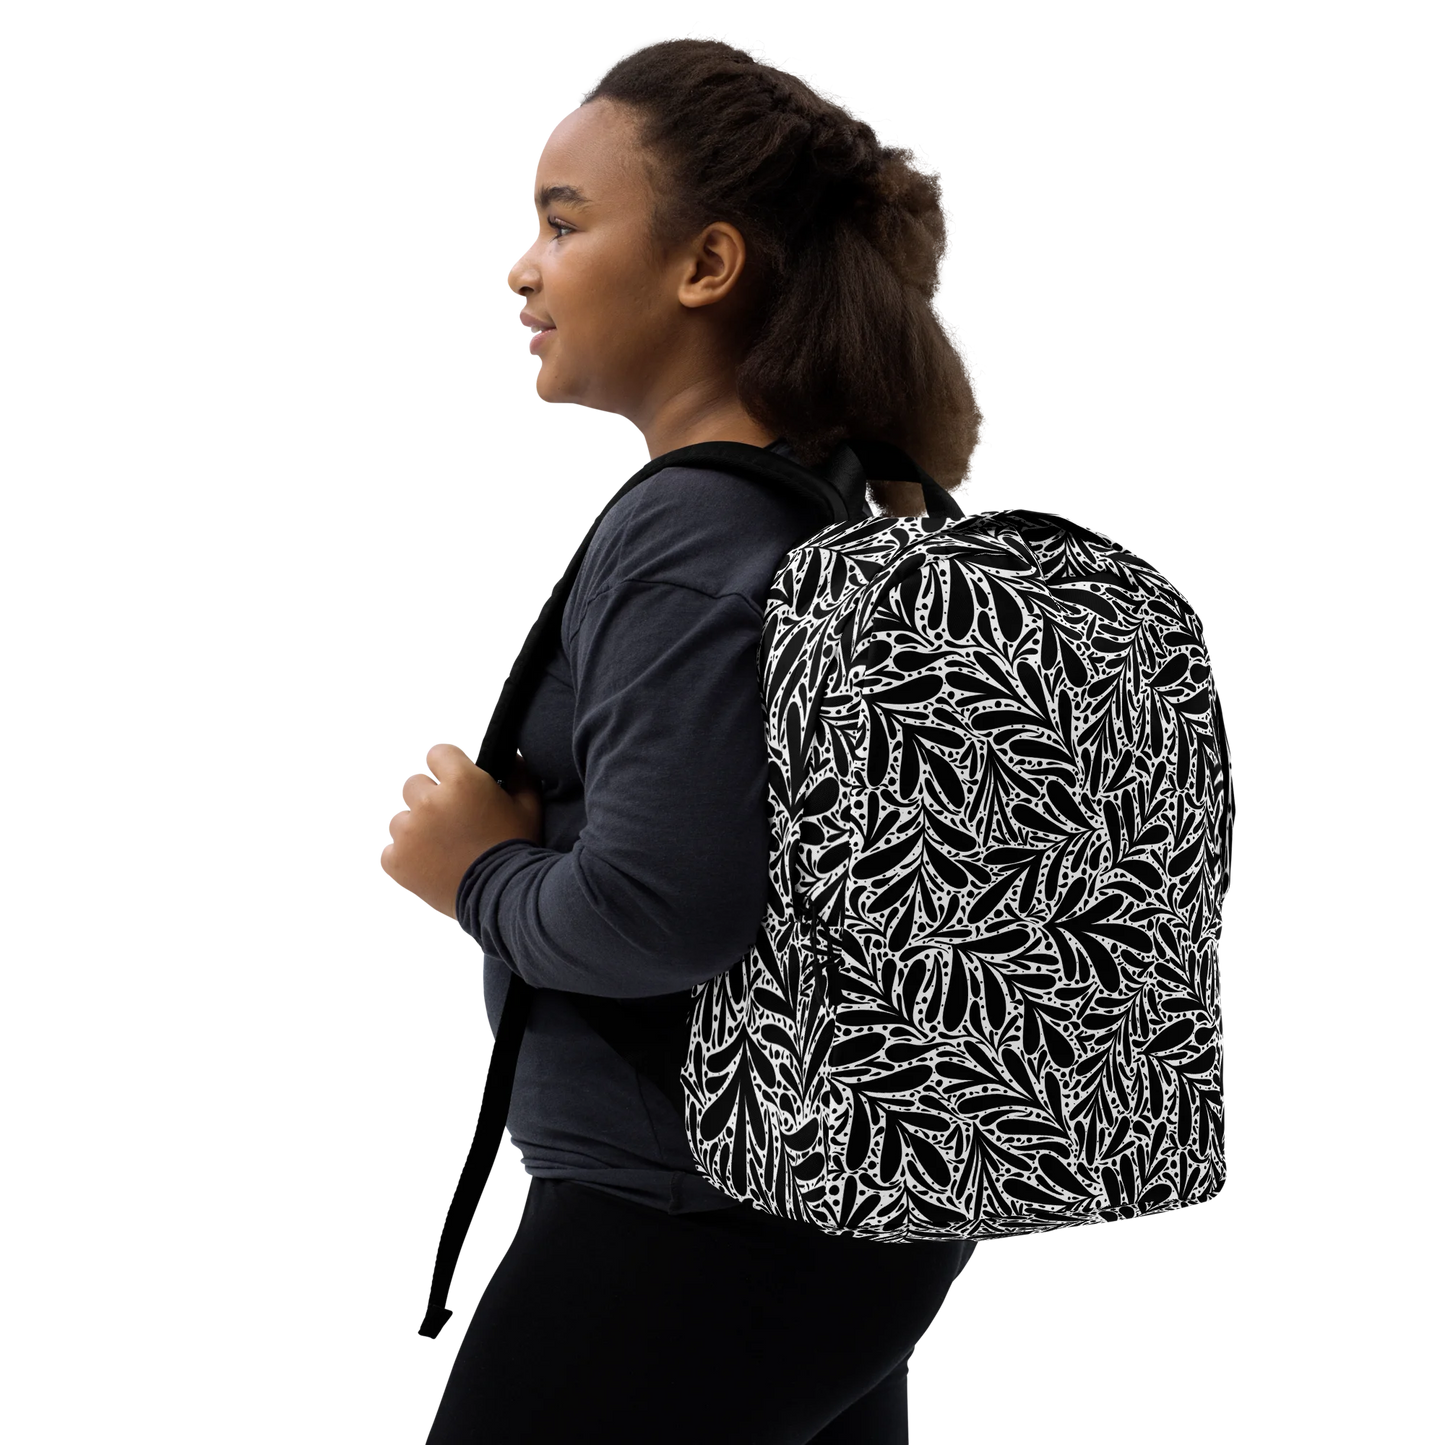 Black Leafy Luxury Backpack